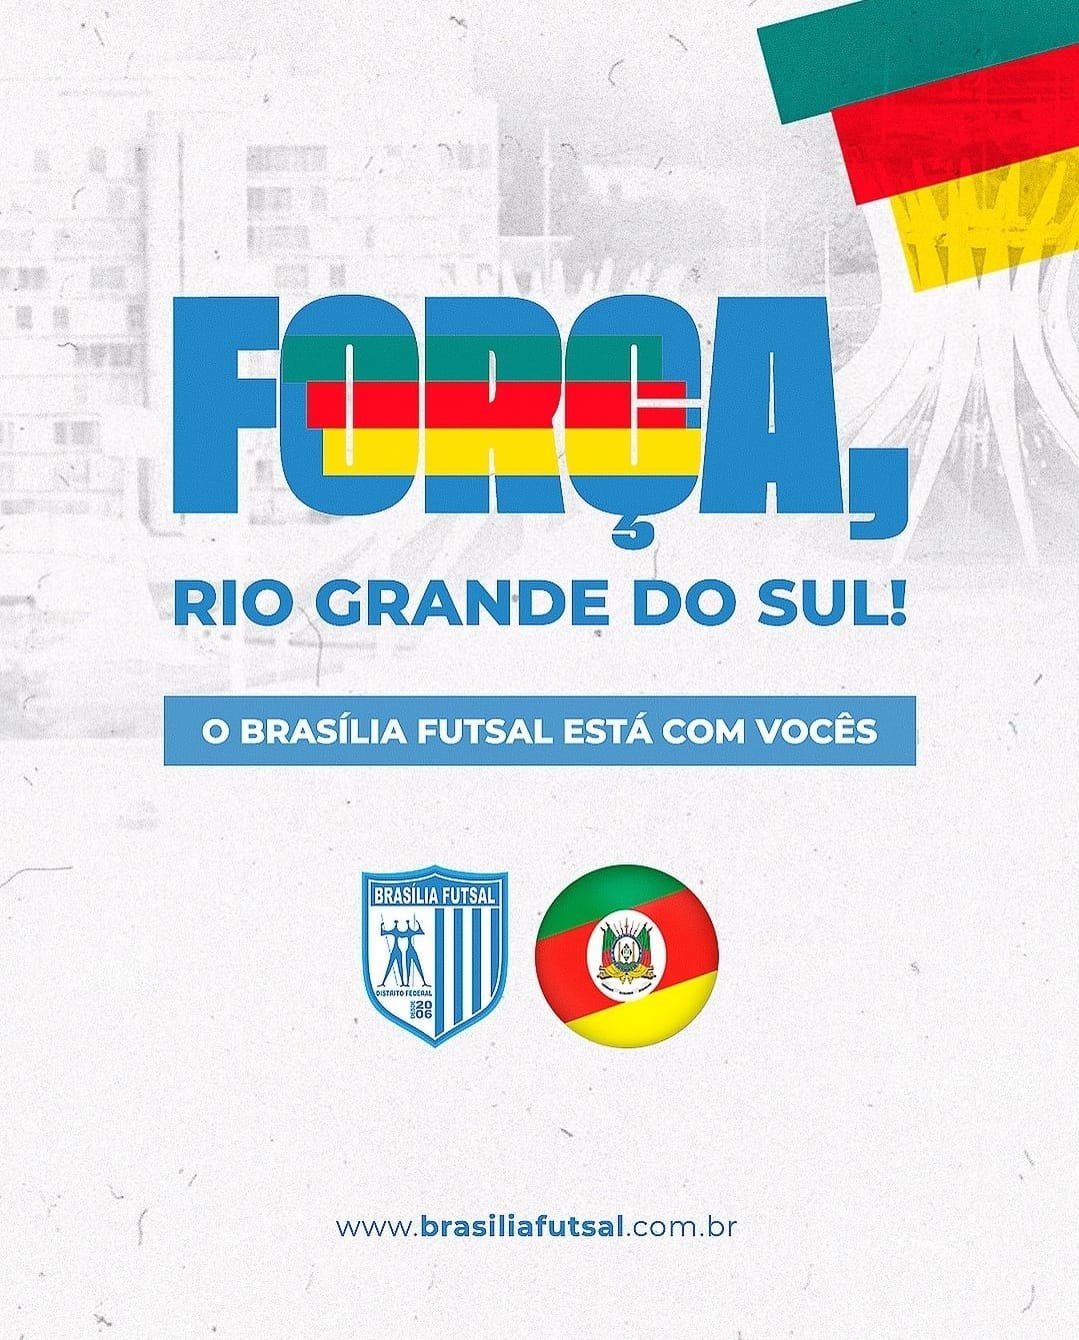 Brasília Futsal arrecadará doações para vítimas do Sul em jogo na próxima segunda-feira